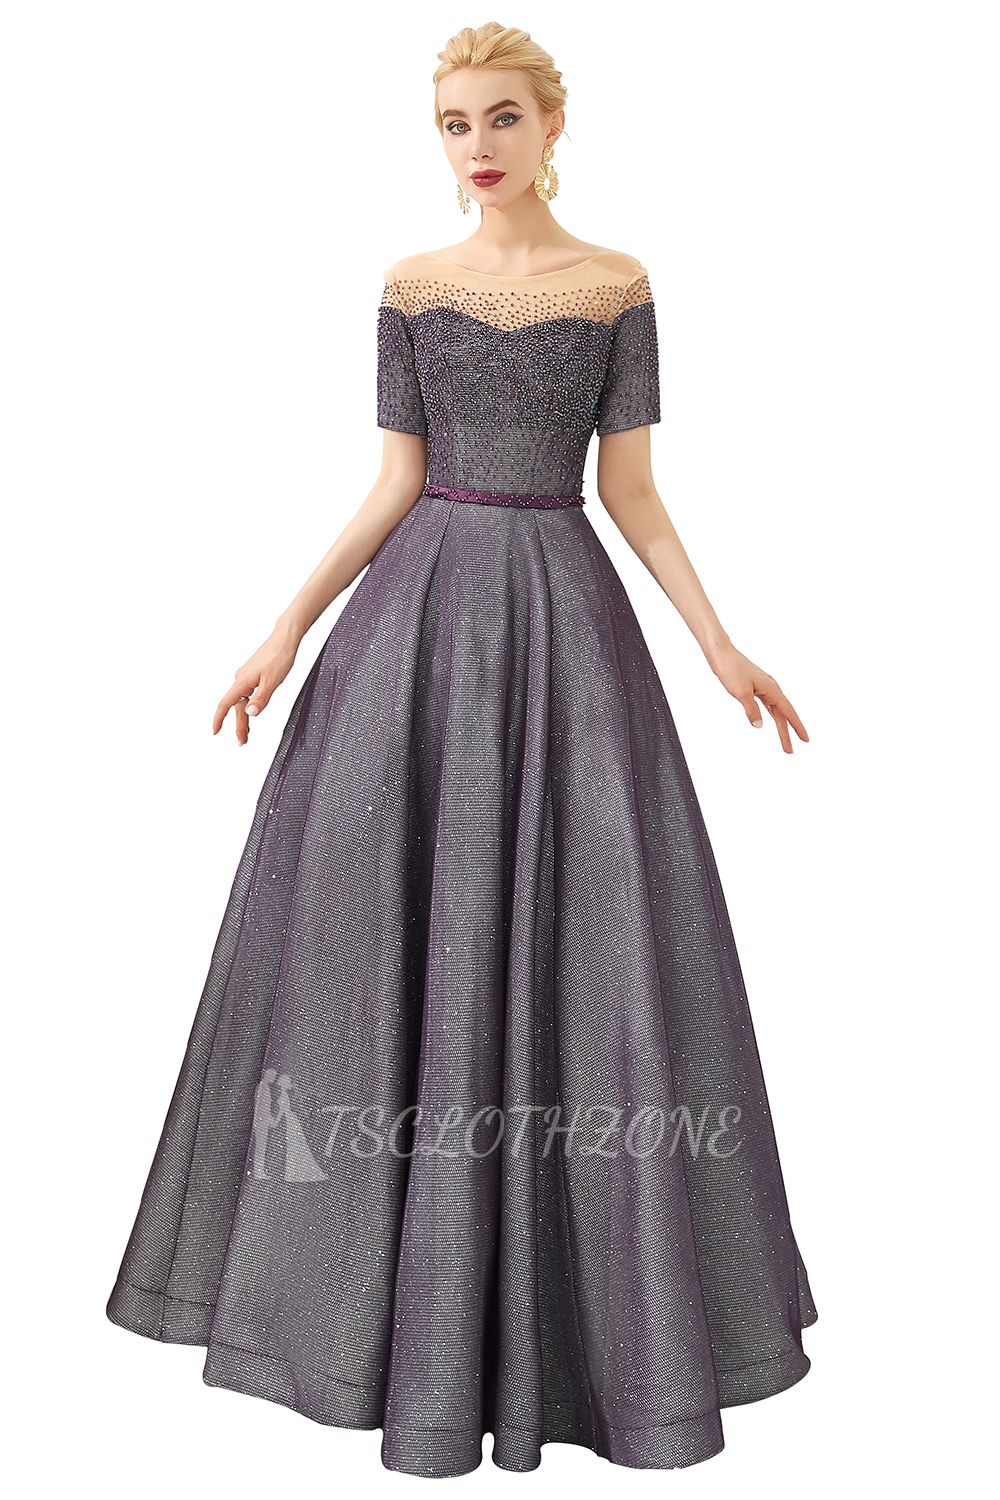 Hayden | Sparkly Regency Round Neck Short sleeves Prom Dress with purple Belt